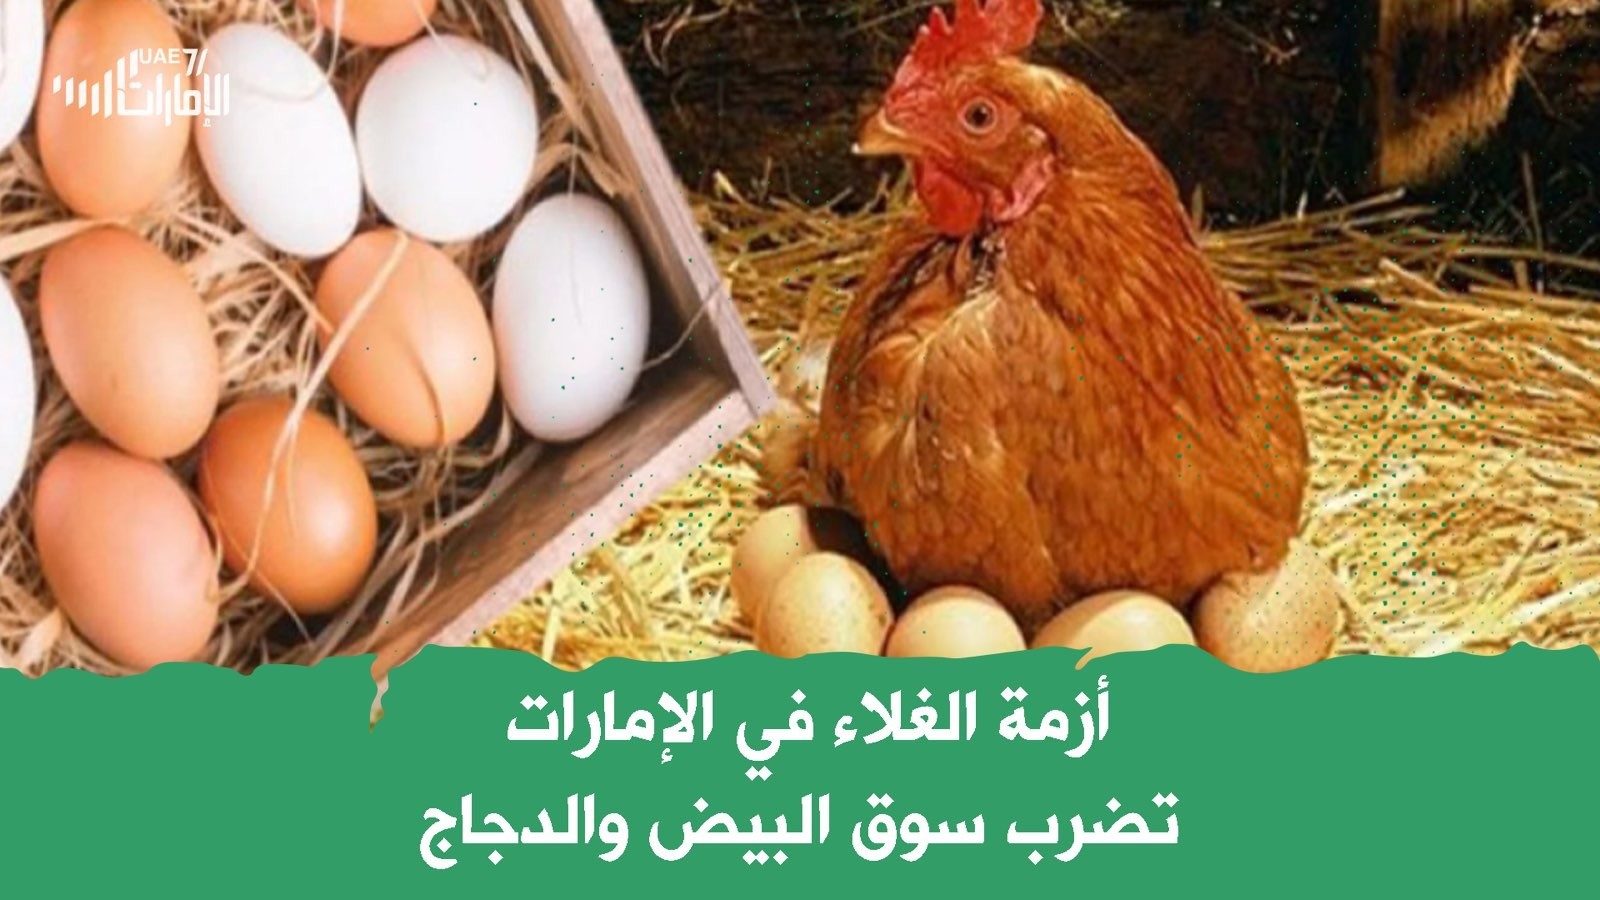 أزمة الغلاء في الإمارات تضرب سوق البيض والدجاج